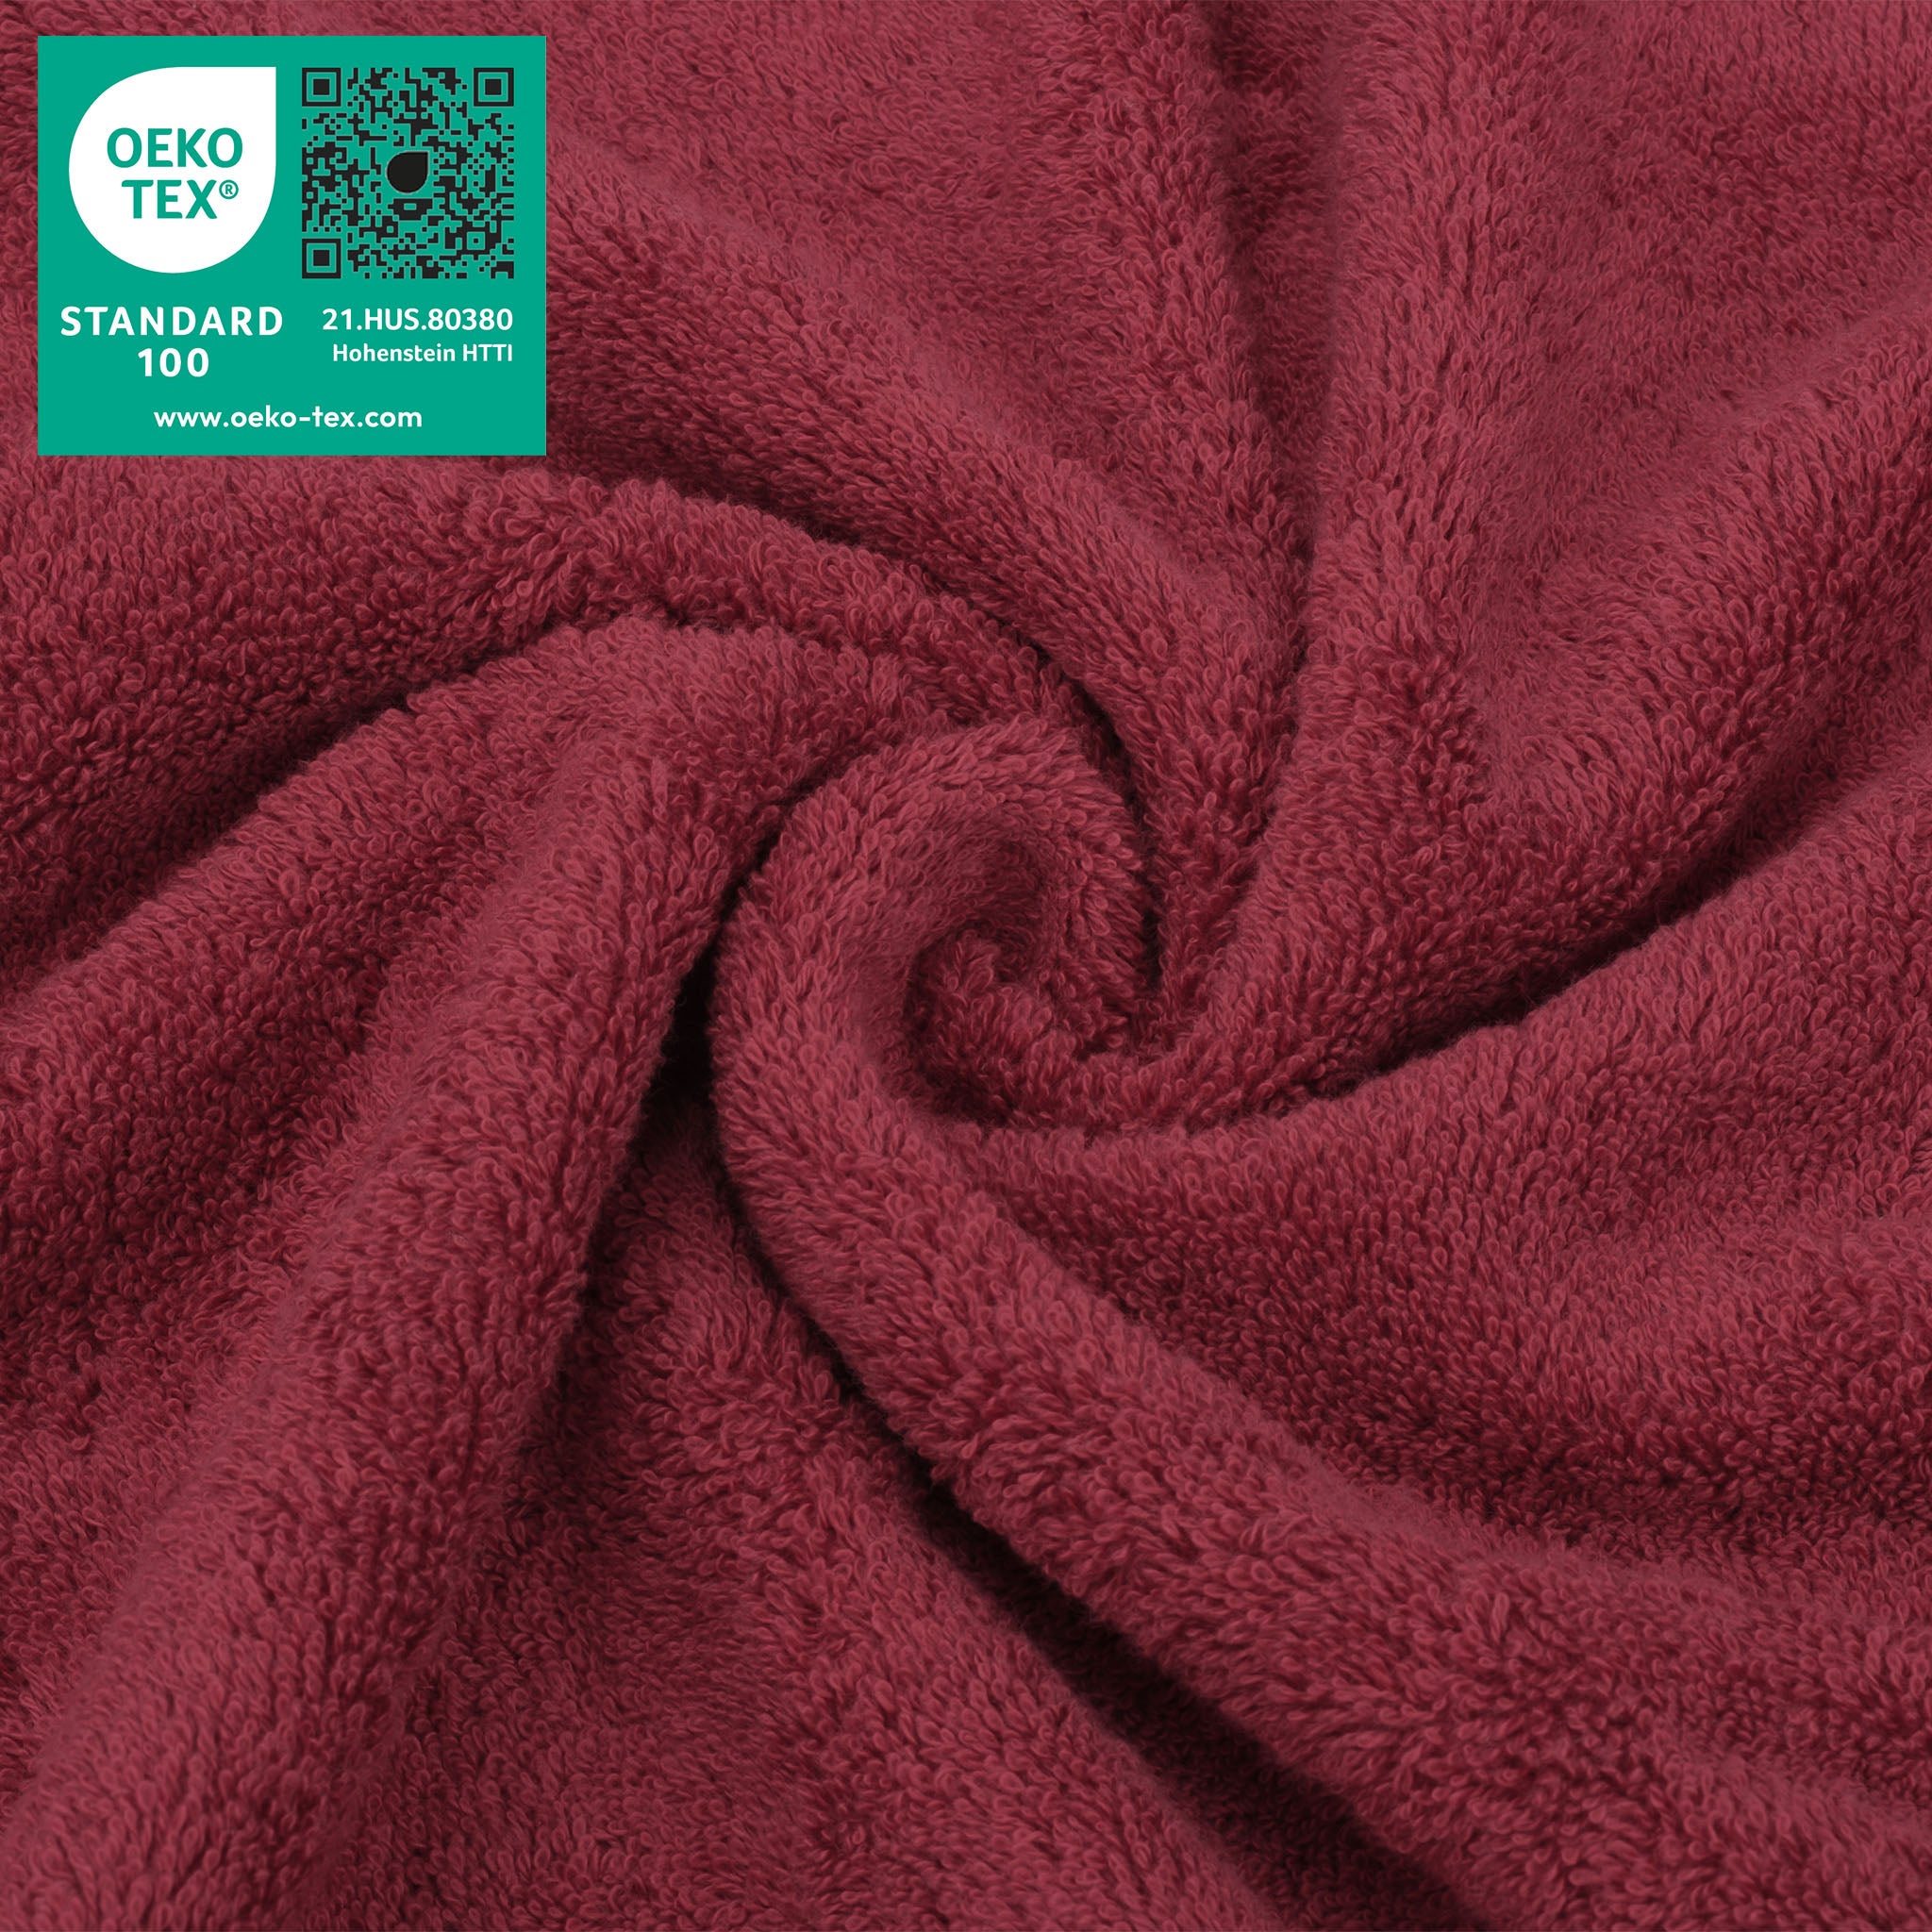  American Soft Linen 100% Turkish Cotton 4 Piece Washcloth Set - Wholesale - bordeaux-red-3